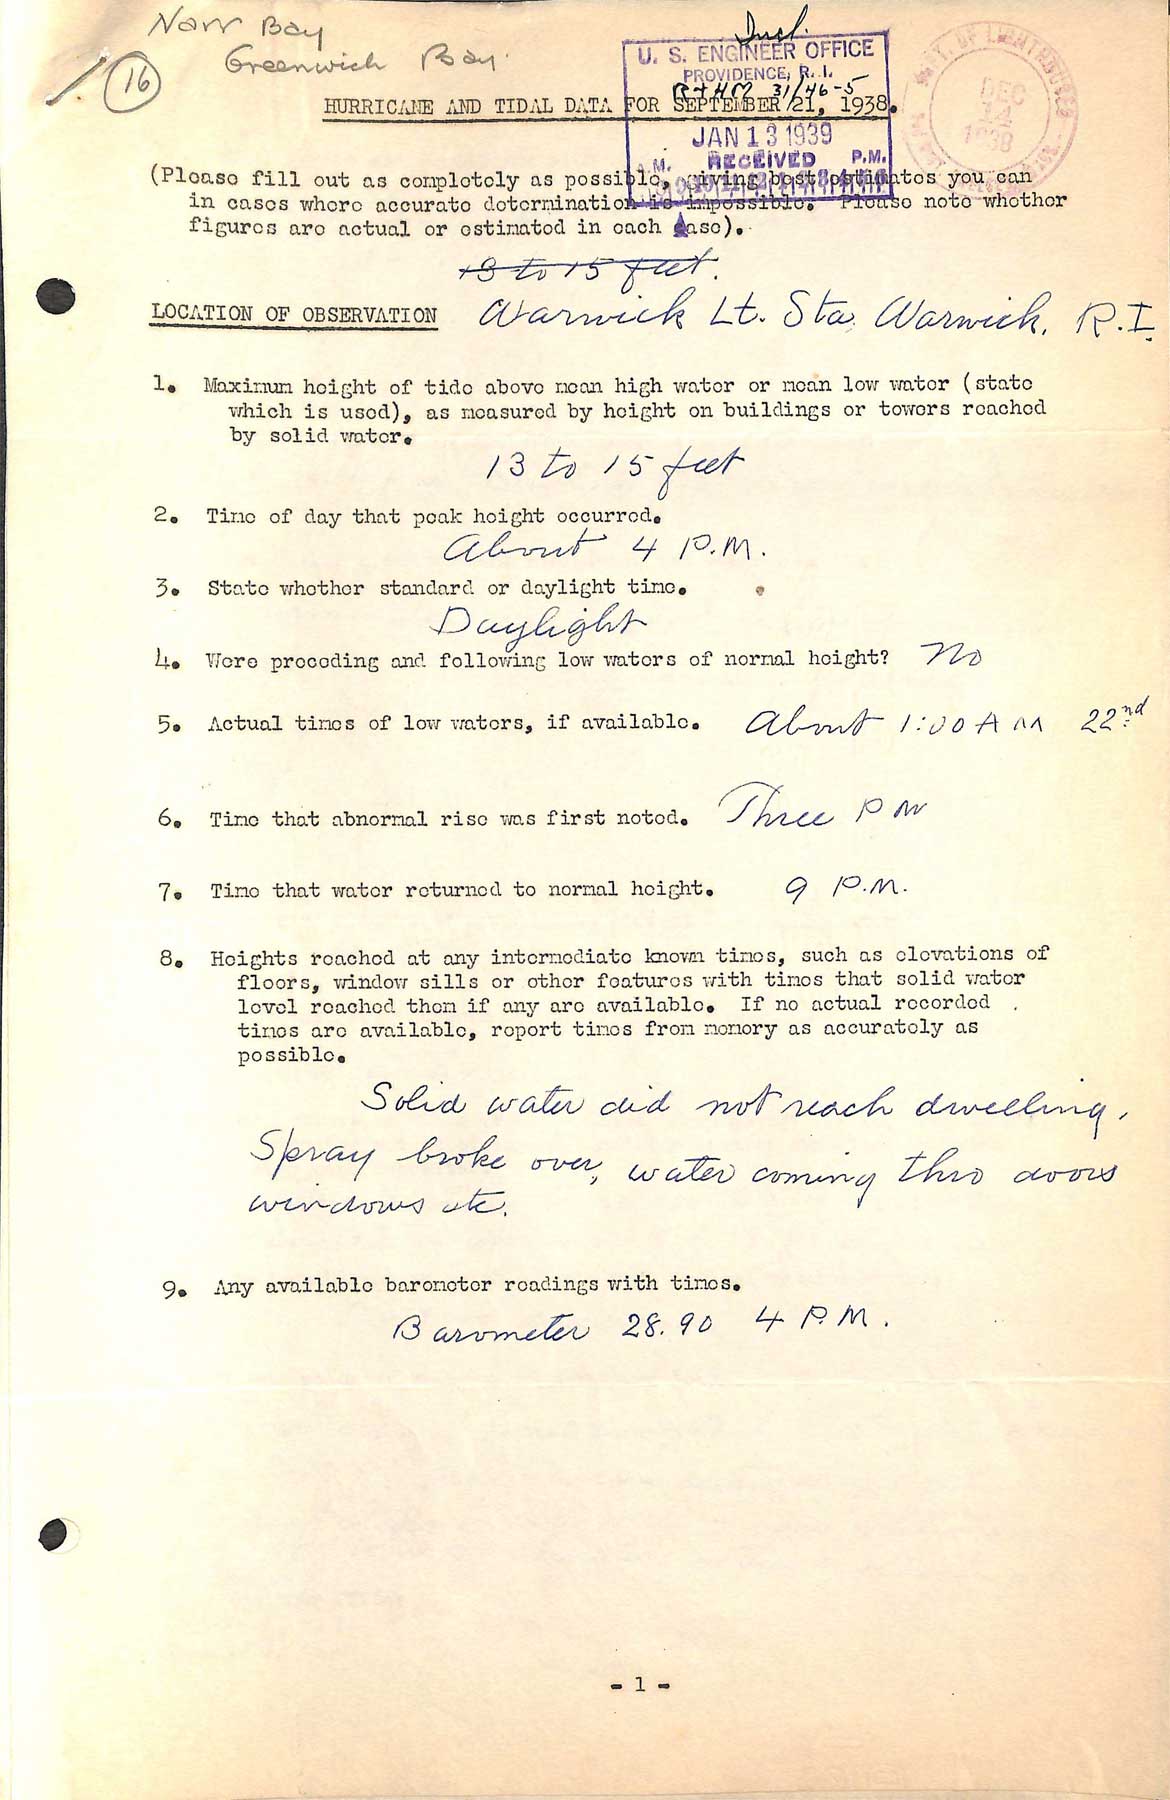 Warwick Light - A questionnaire regarding the hurricane of September 21, 1938